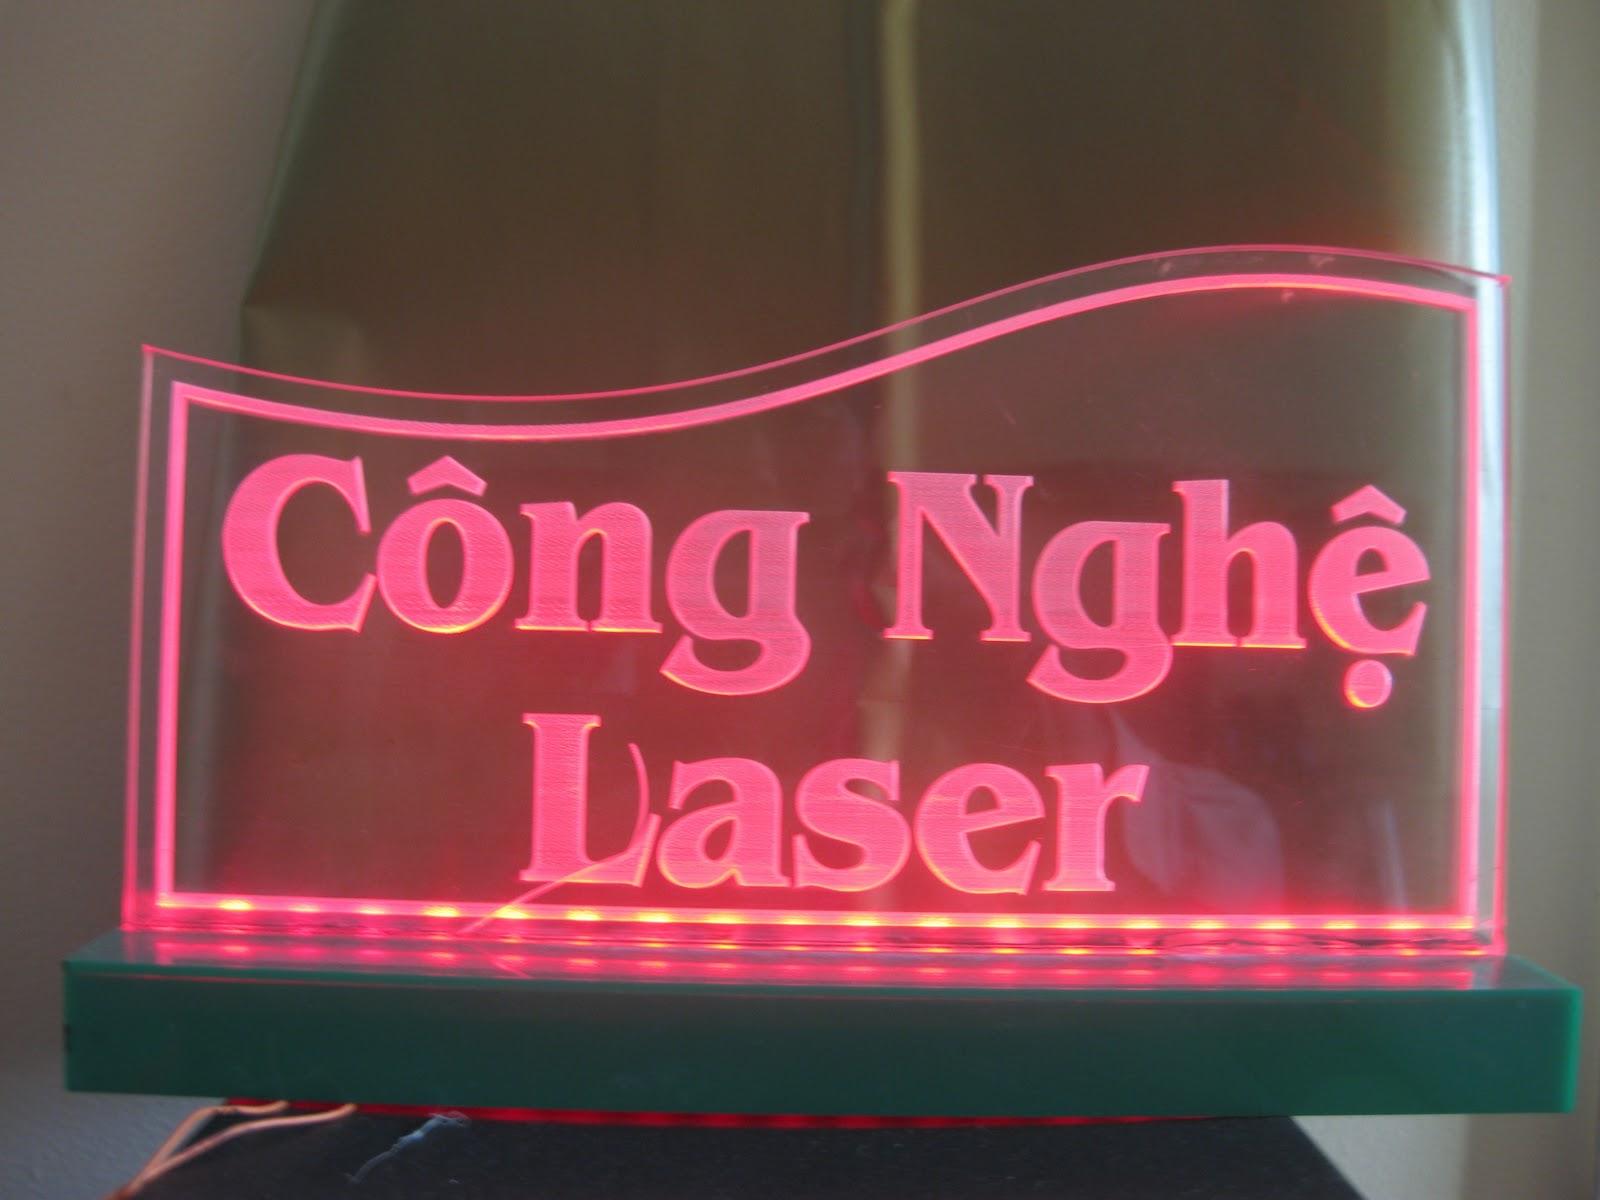 Cắt khắc laser tại Hóc Môn, Củ Chi, các tỉnh lân cận TP.HCM